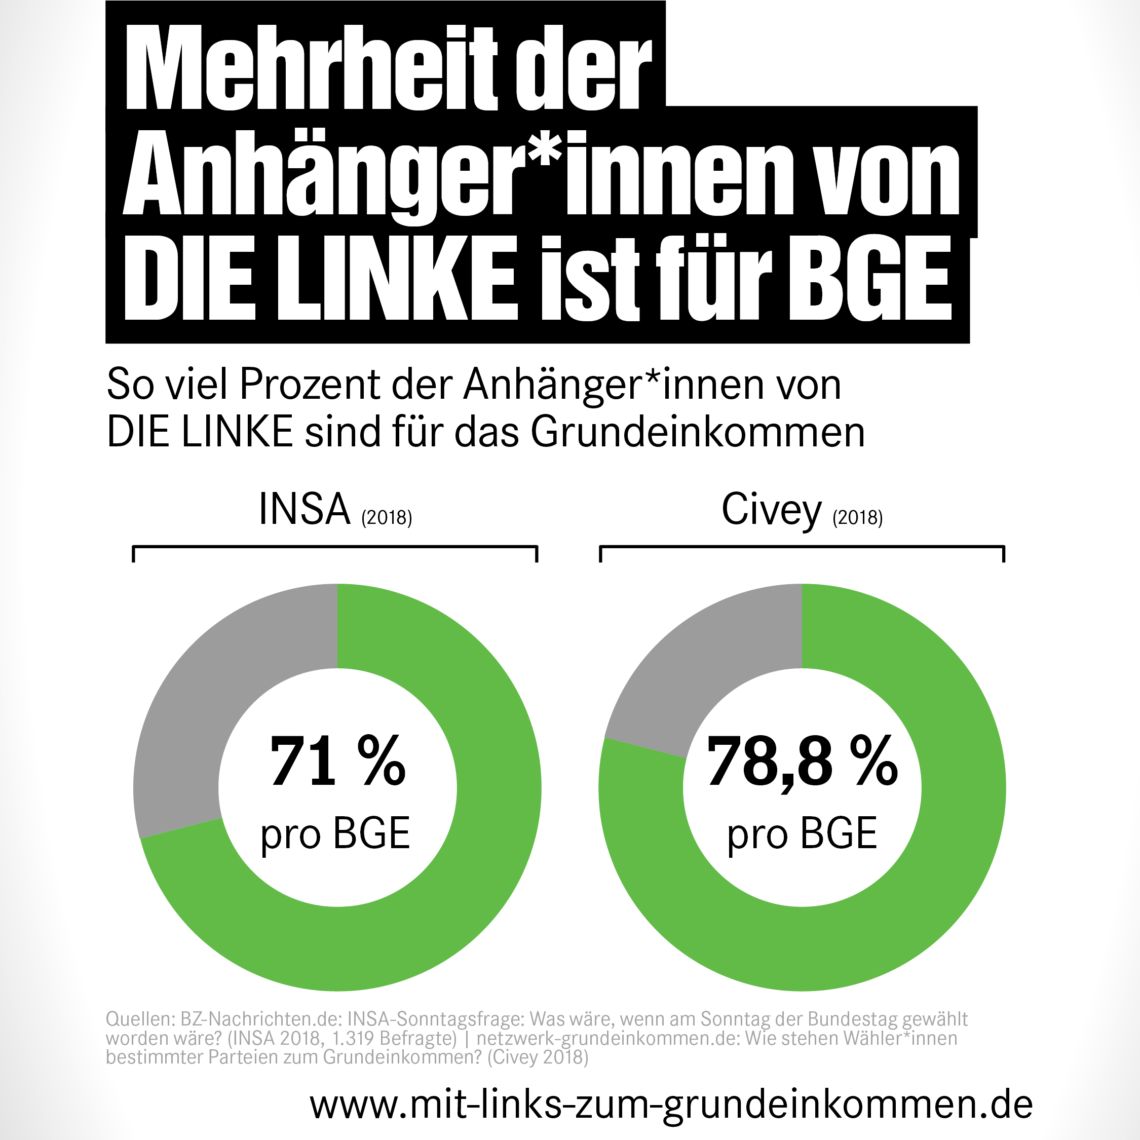  Mehrheit der   Anhänger*innen von   DIE LINKE ist für BGE: So viel Prozent der Anhänger*innen von  DIE LINKE sind für das Grundeinkommen. INSA (2018) 71 %, Civey (2018) 78,8 %